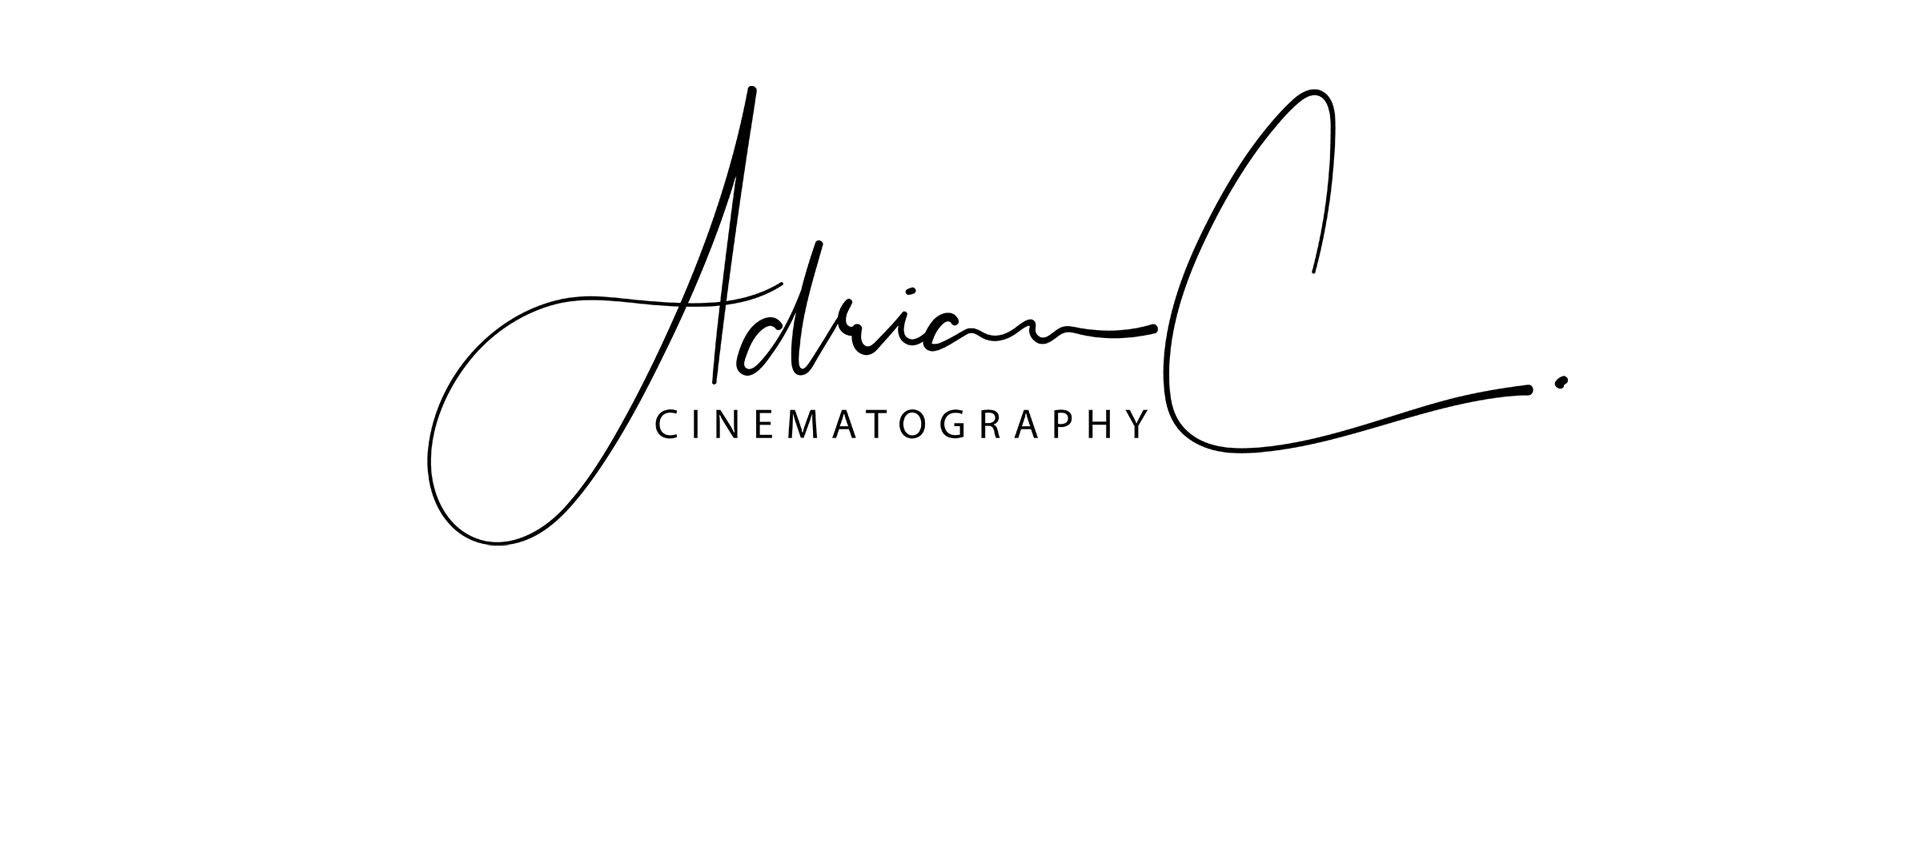 Cinematographer Logo - Singapore Wedding Videographer. Videography. Cinematographer